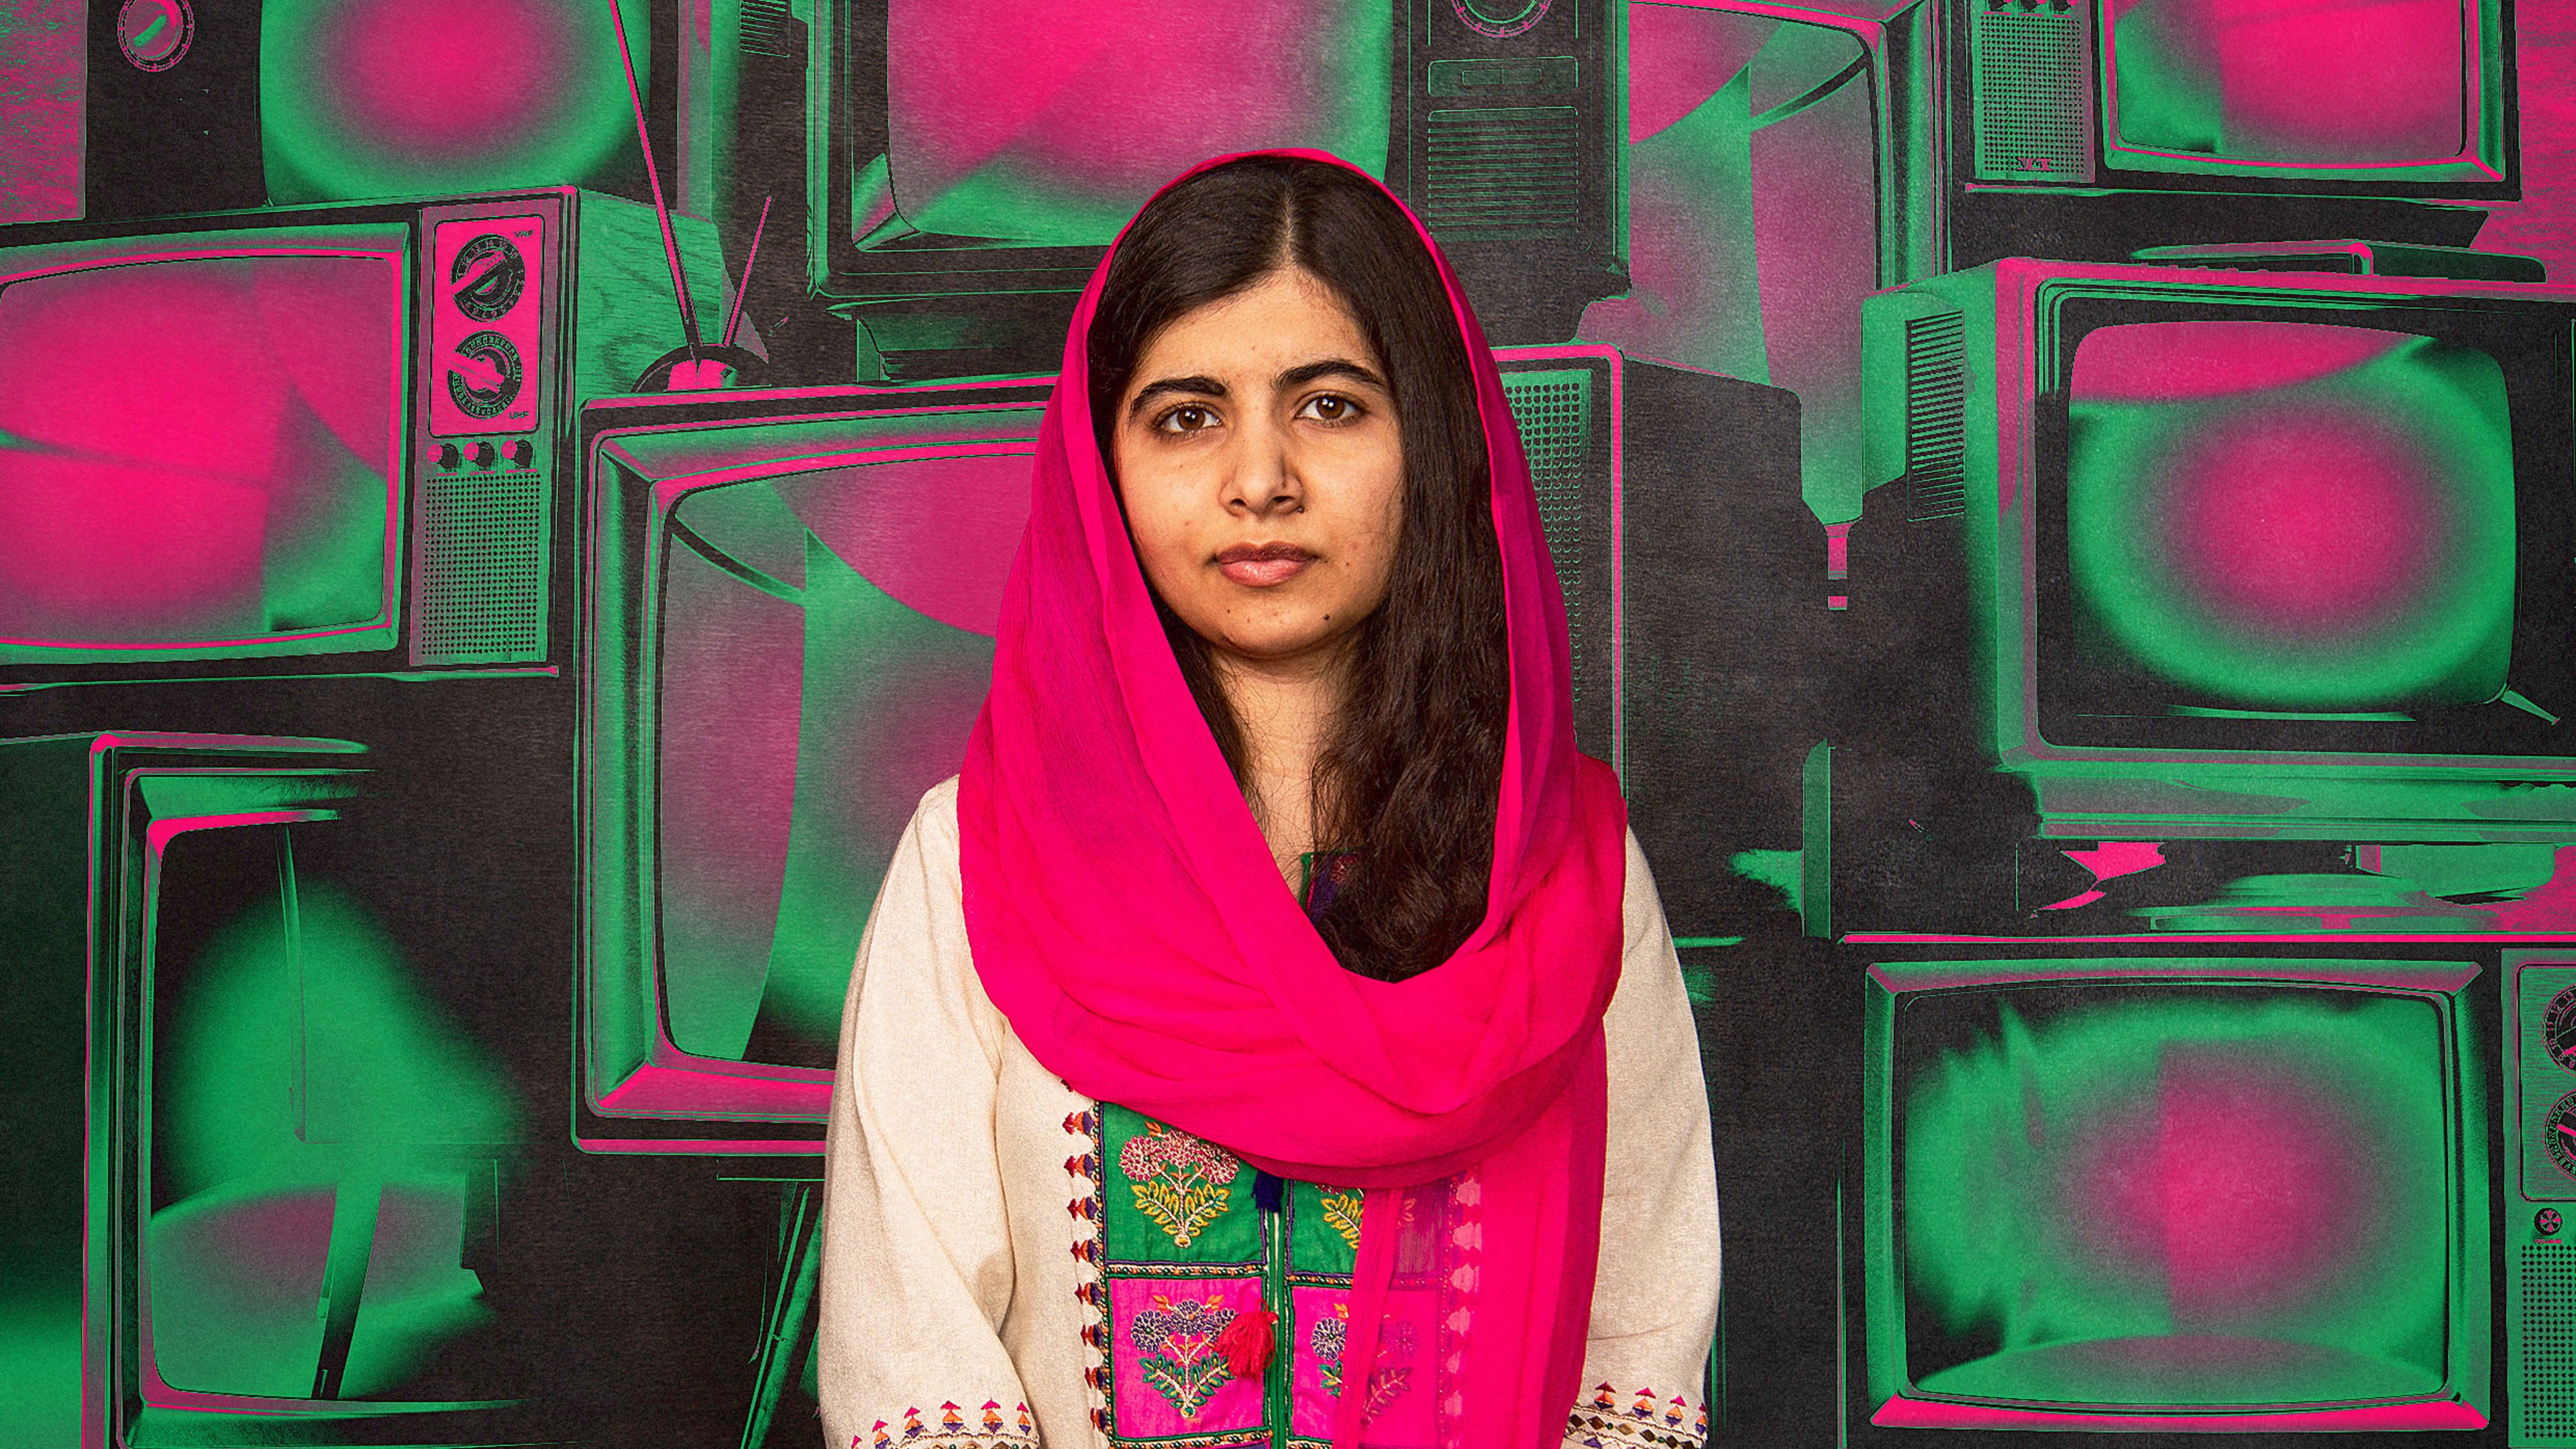 A stylized portrait of Malala Yousafzai